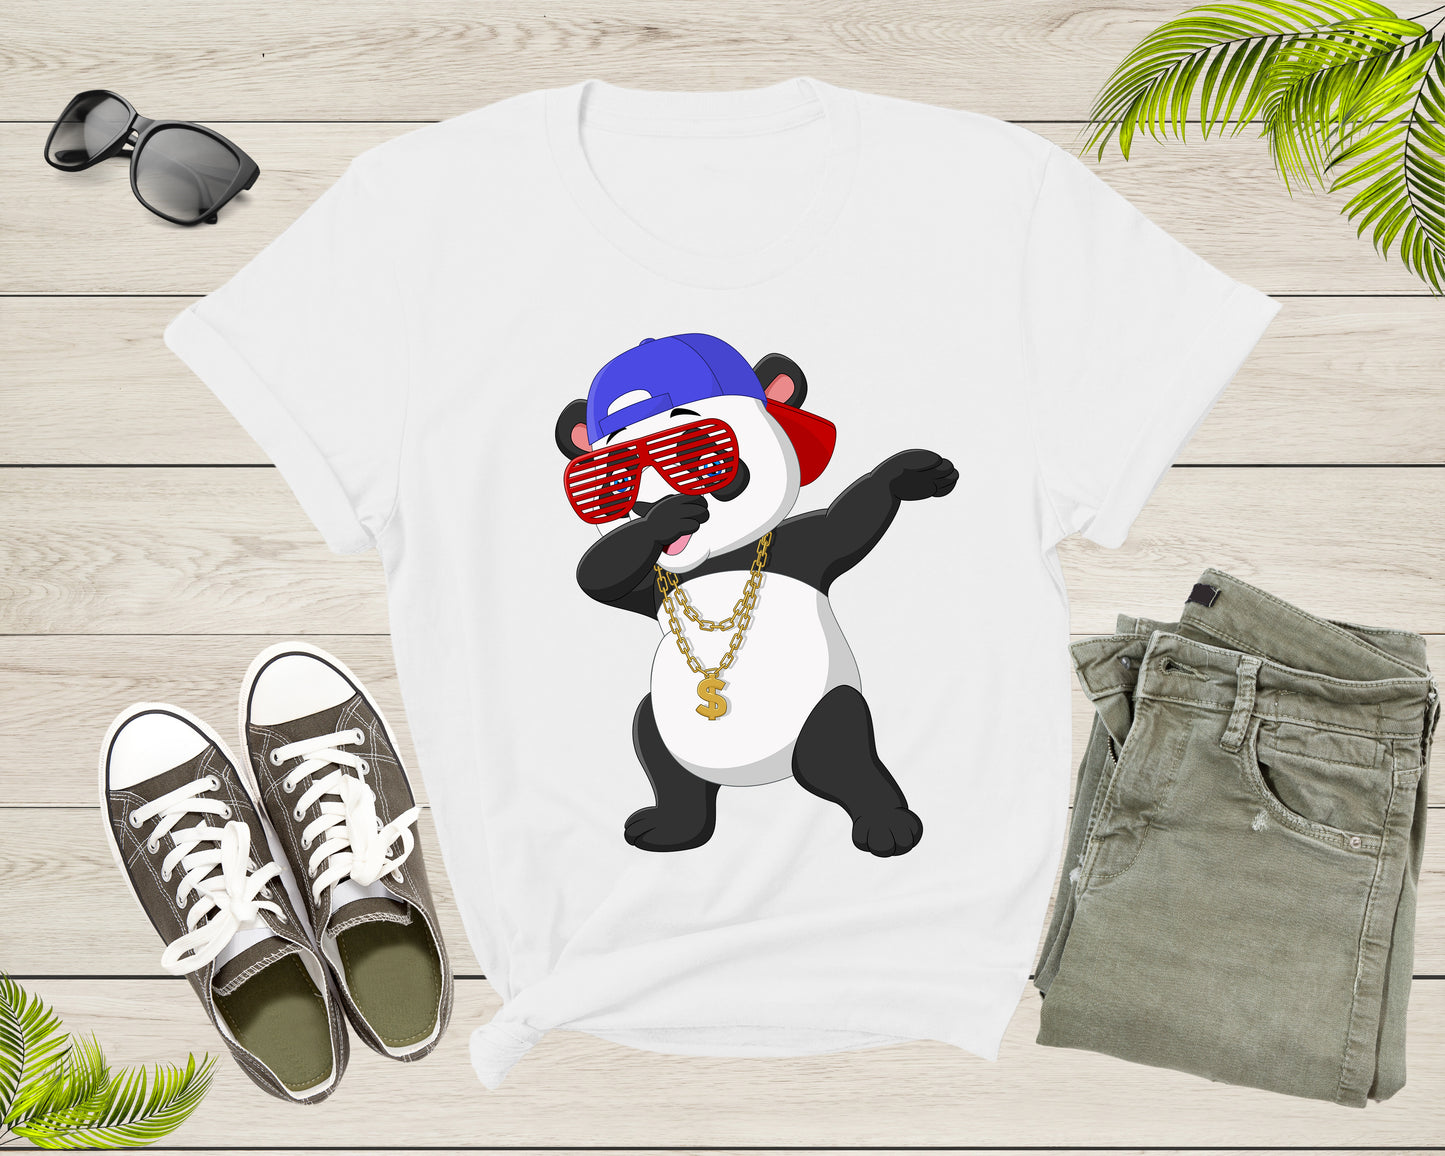 Cool Dabbing Dancing Panda Wearing Sunglasses Hat Necklace T-Shirt Panda Shirt for Men Women Kids Boys Girls Teens Graphic Gift Tshirt